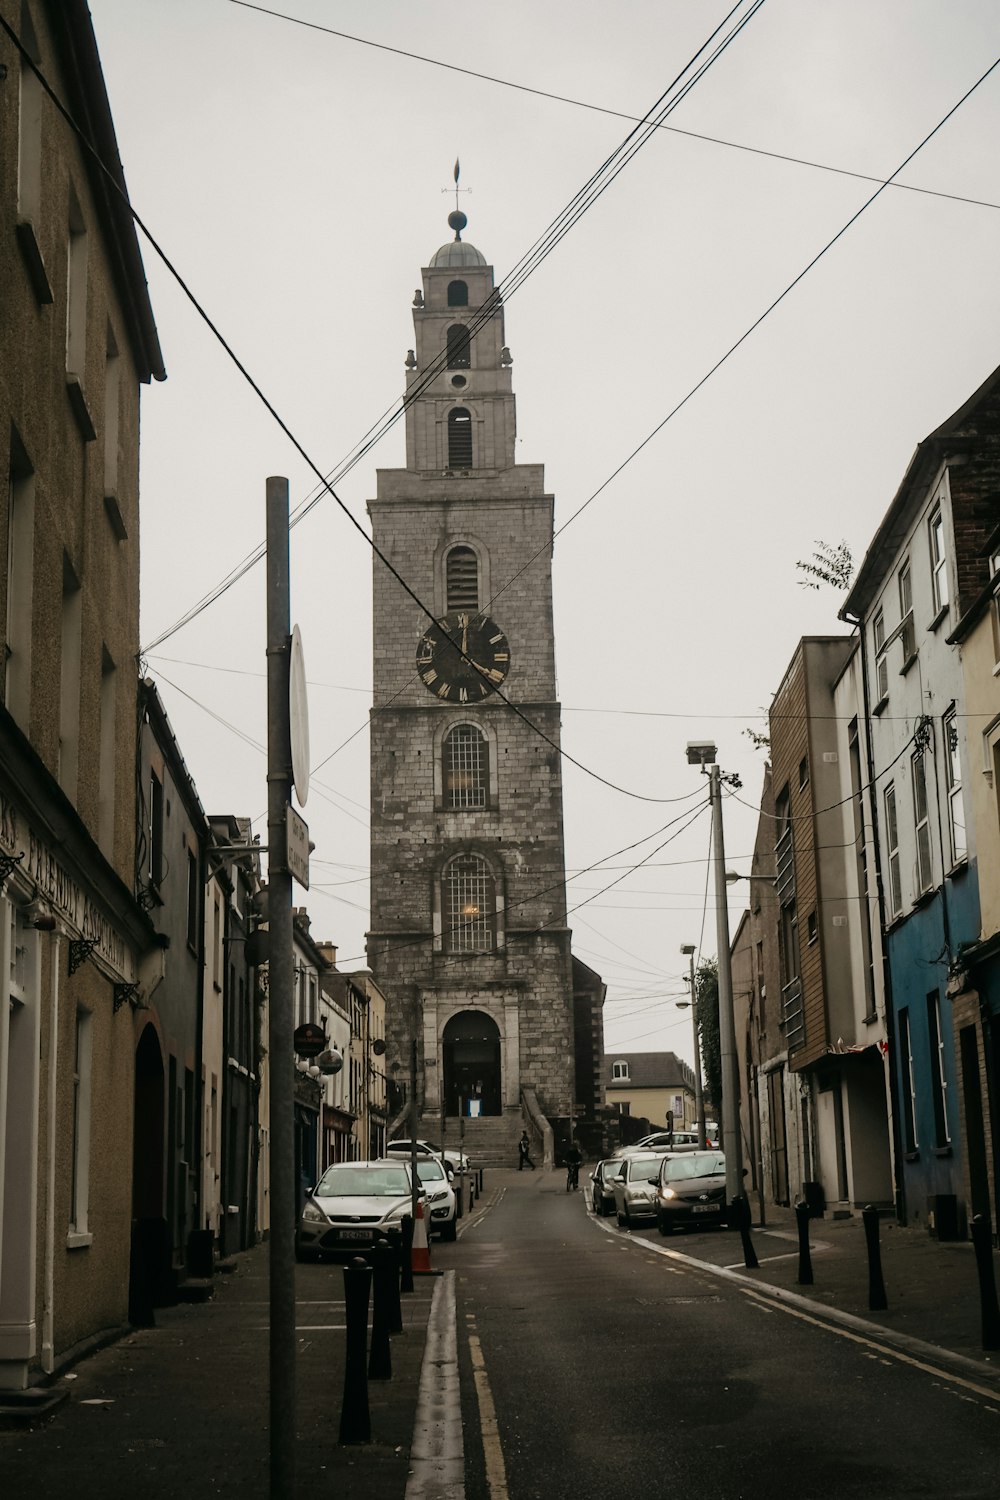 uma torre do relógio alta que se eleva sobre uma rua da cidade